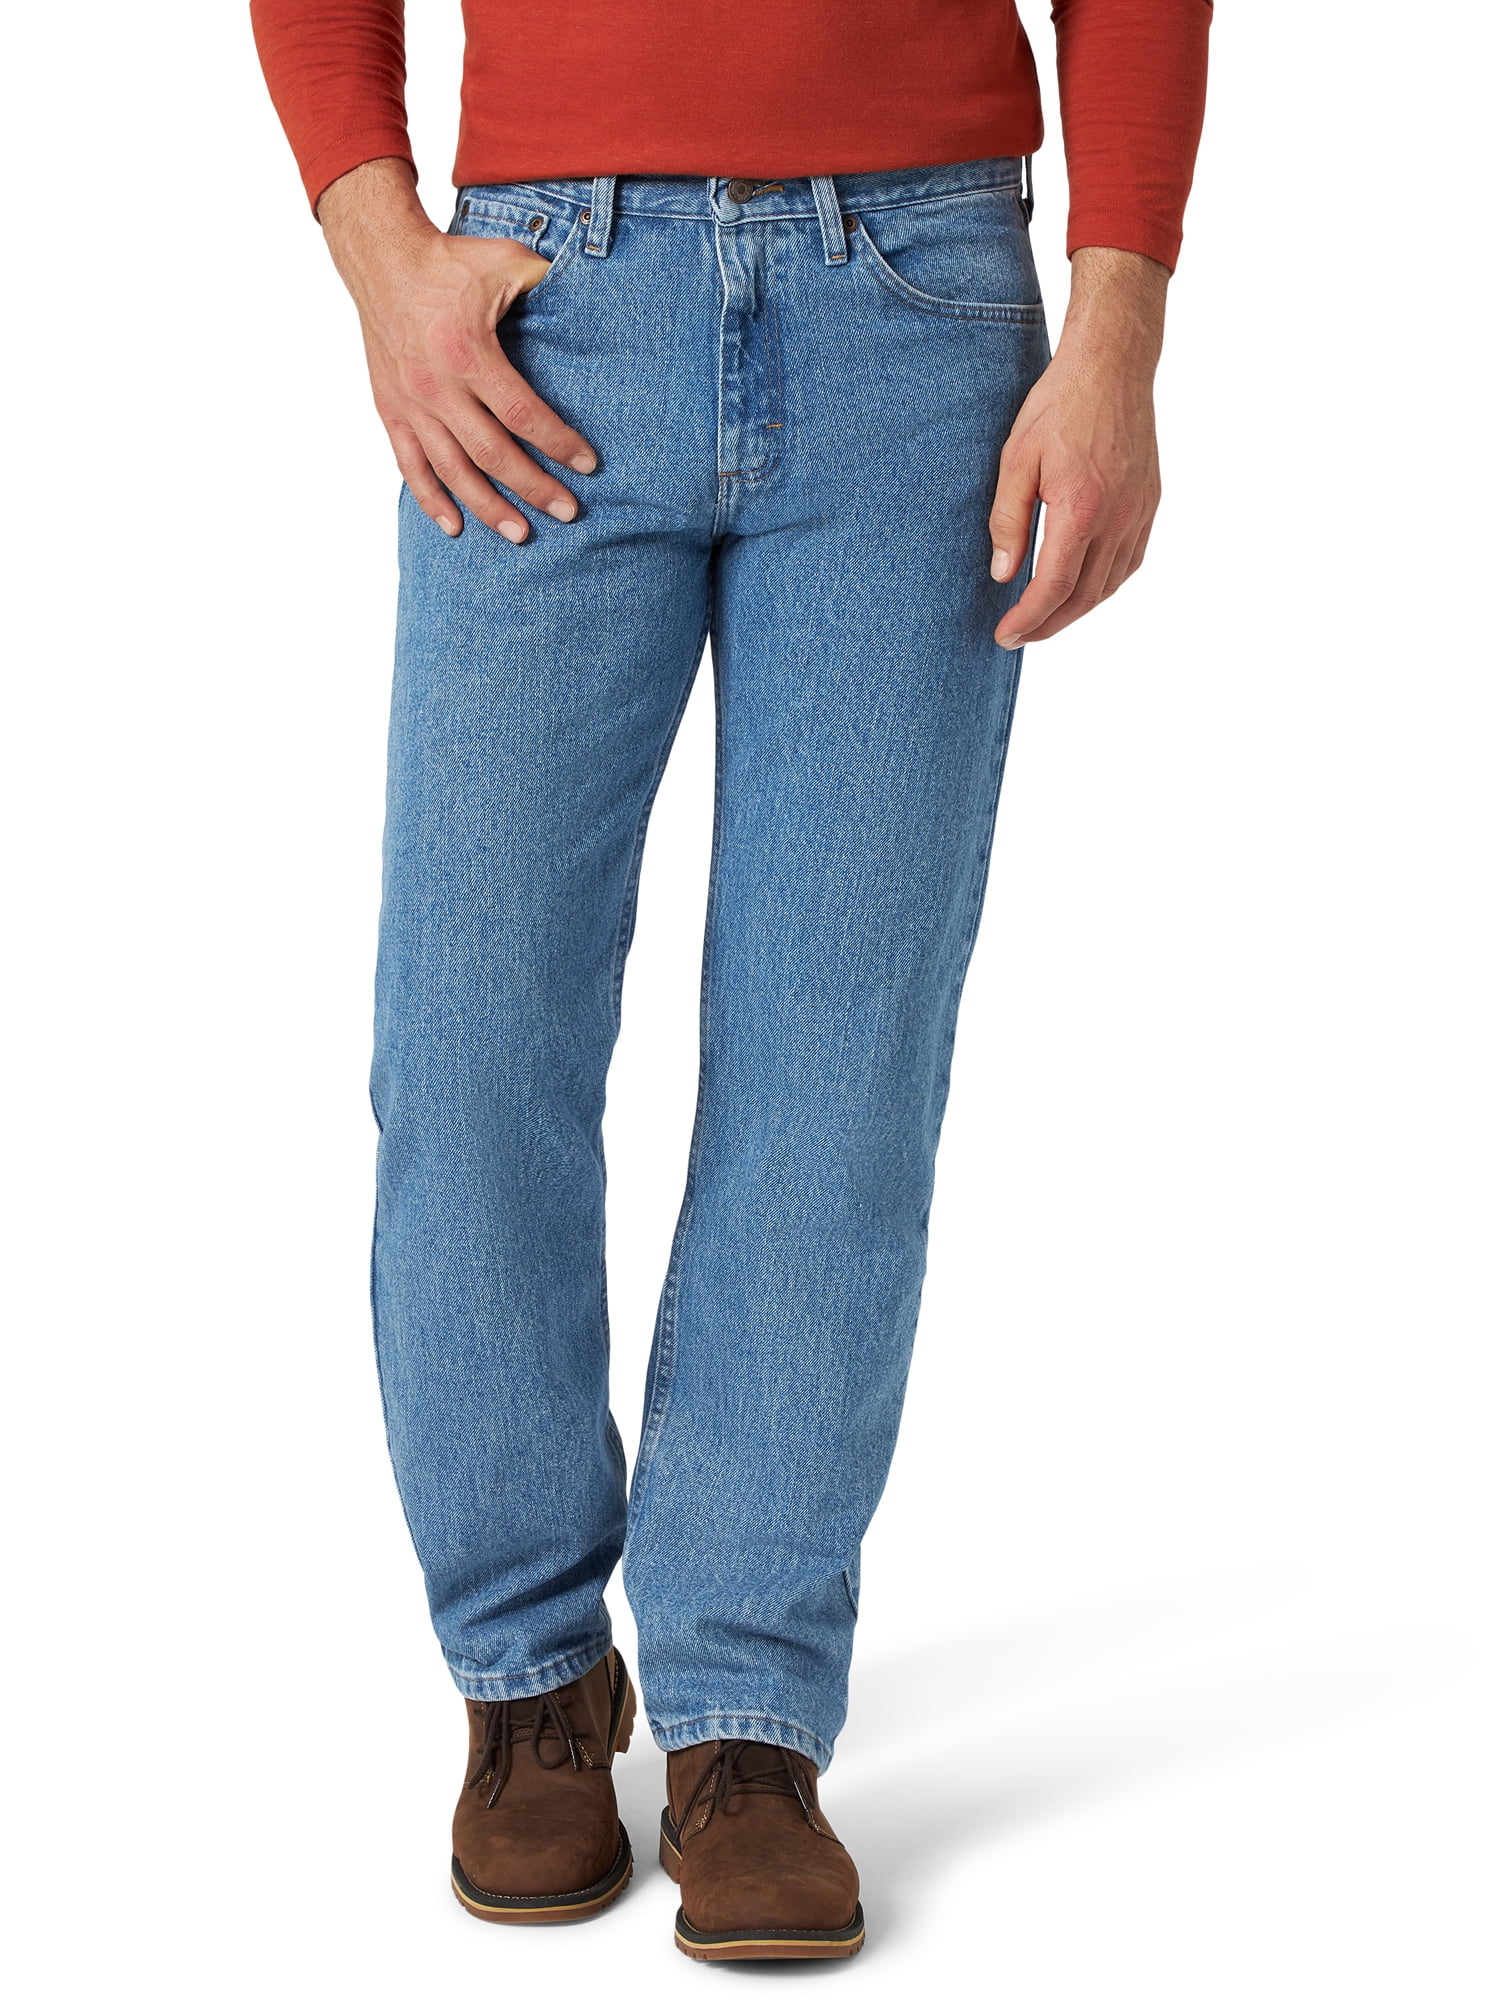 Wrangler Men's Relaxed Fit Jeans 